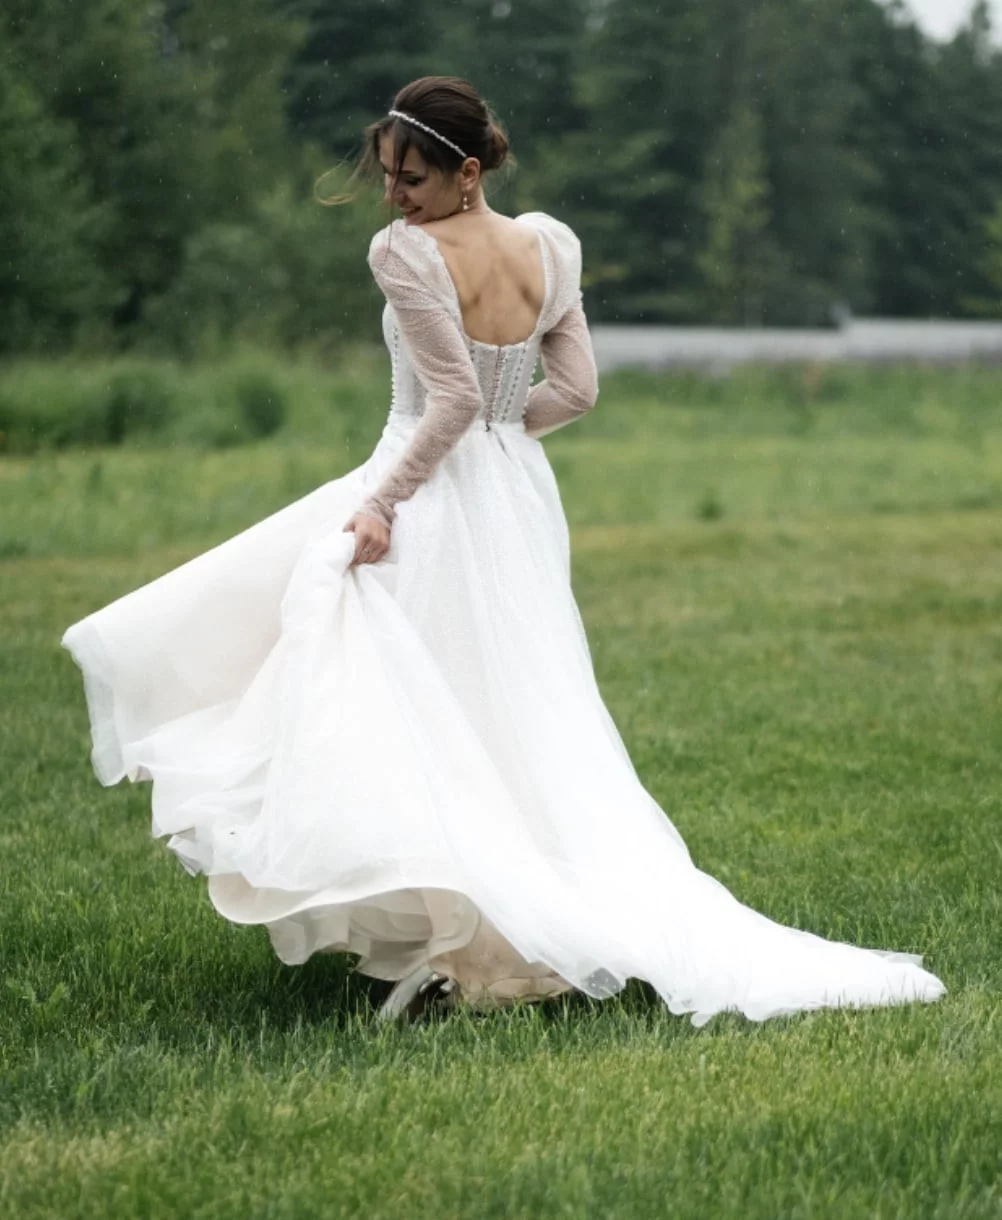 Как возникло суеверие, что жениху нельзя видеть невесту в свадебном платье до свадьбы?